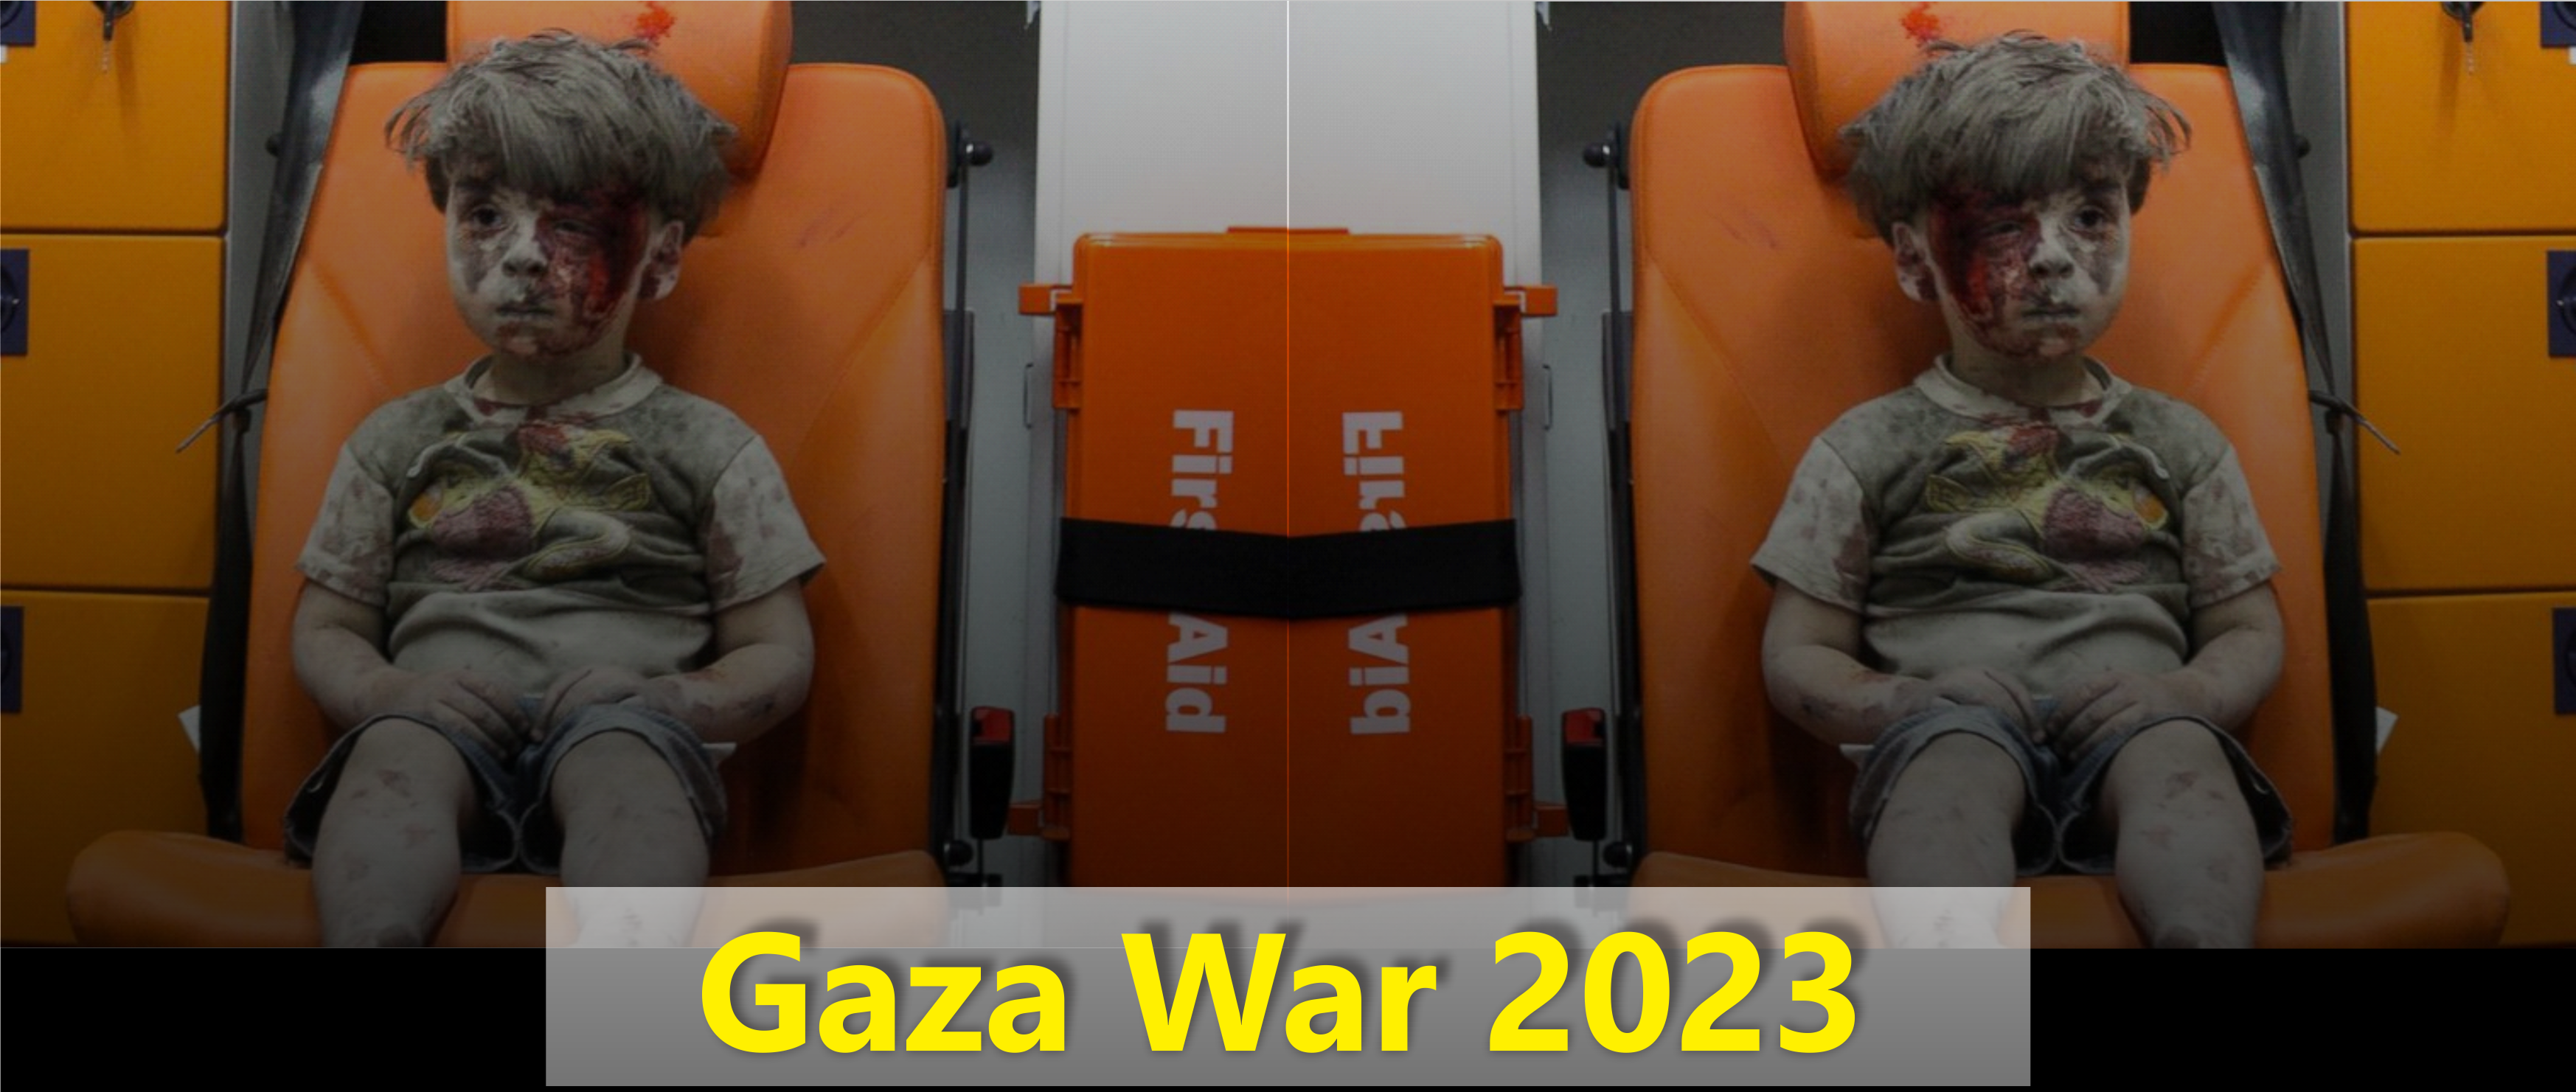 Gaza War 2023